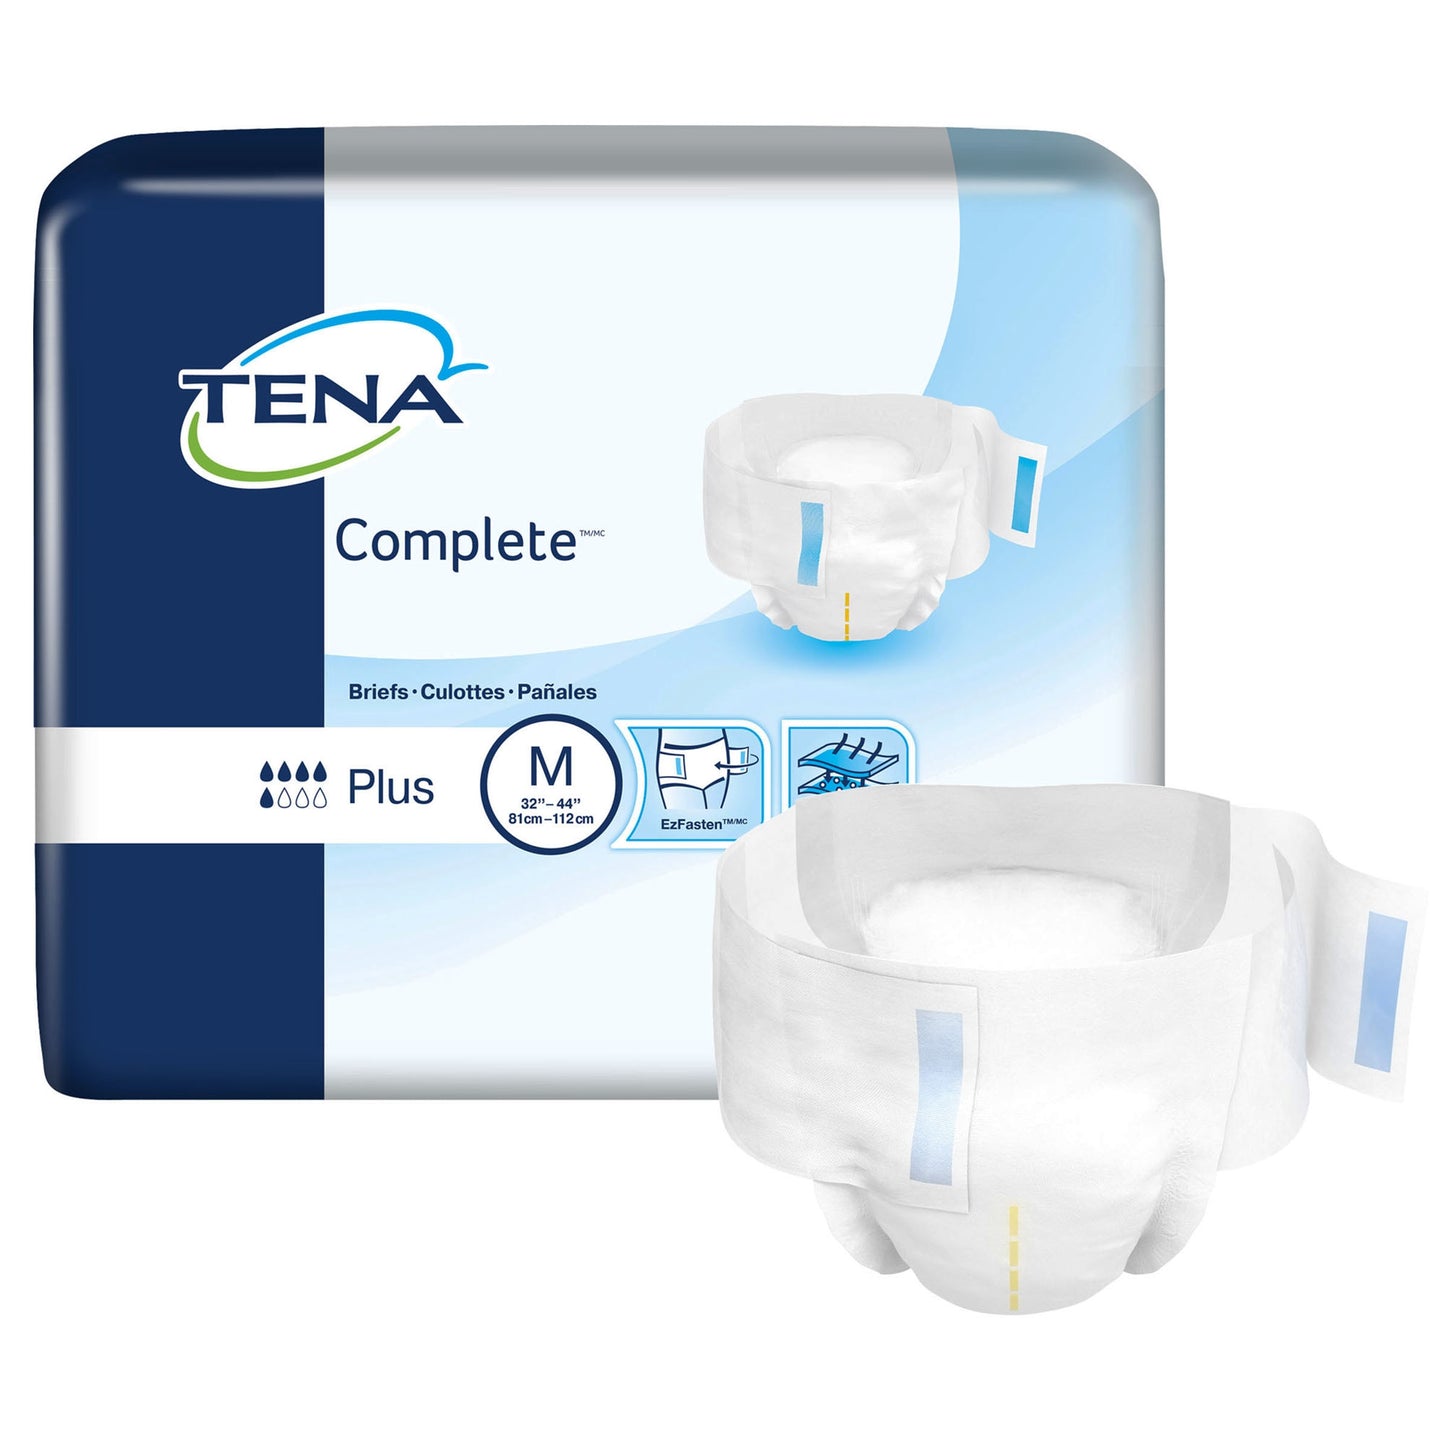 Tena Complete Plus Incontinence Brief, Medium - 67320